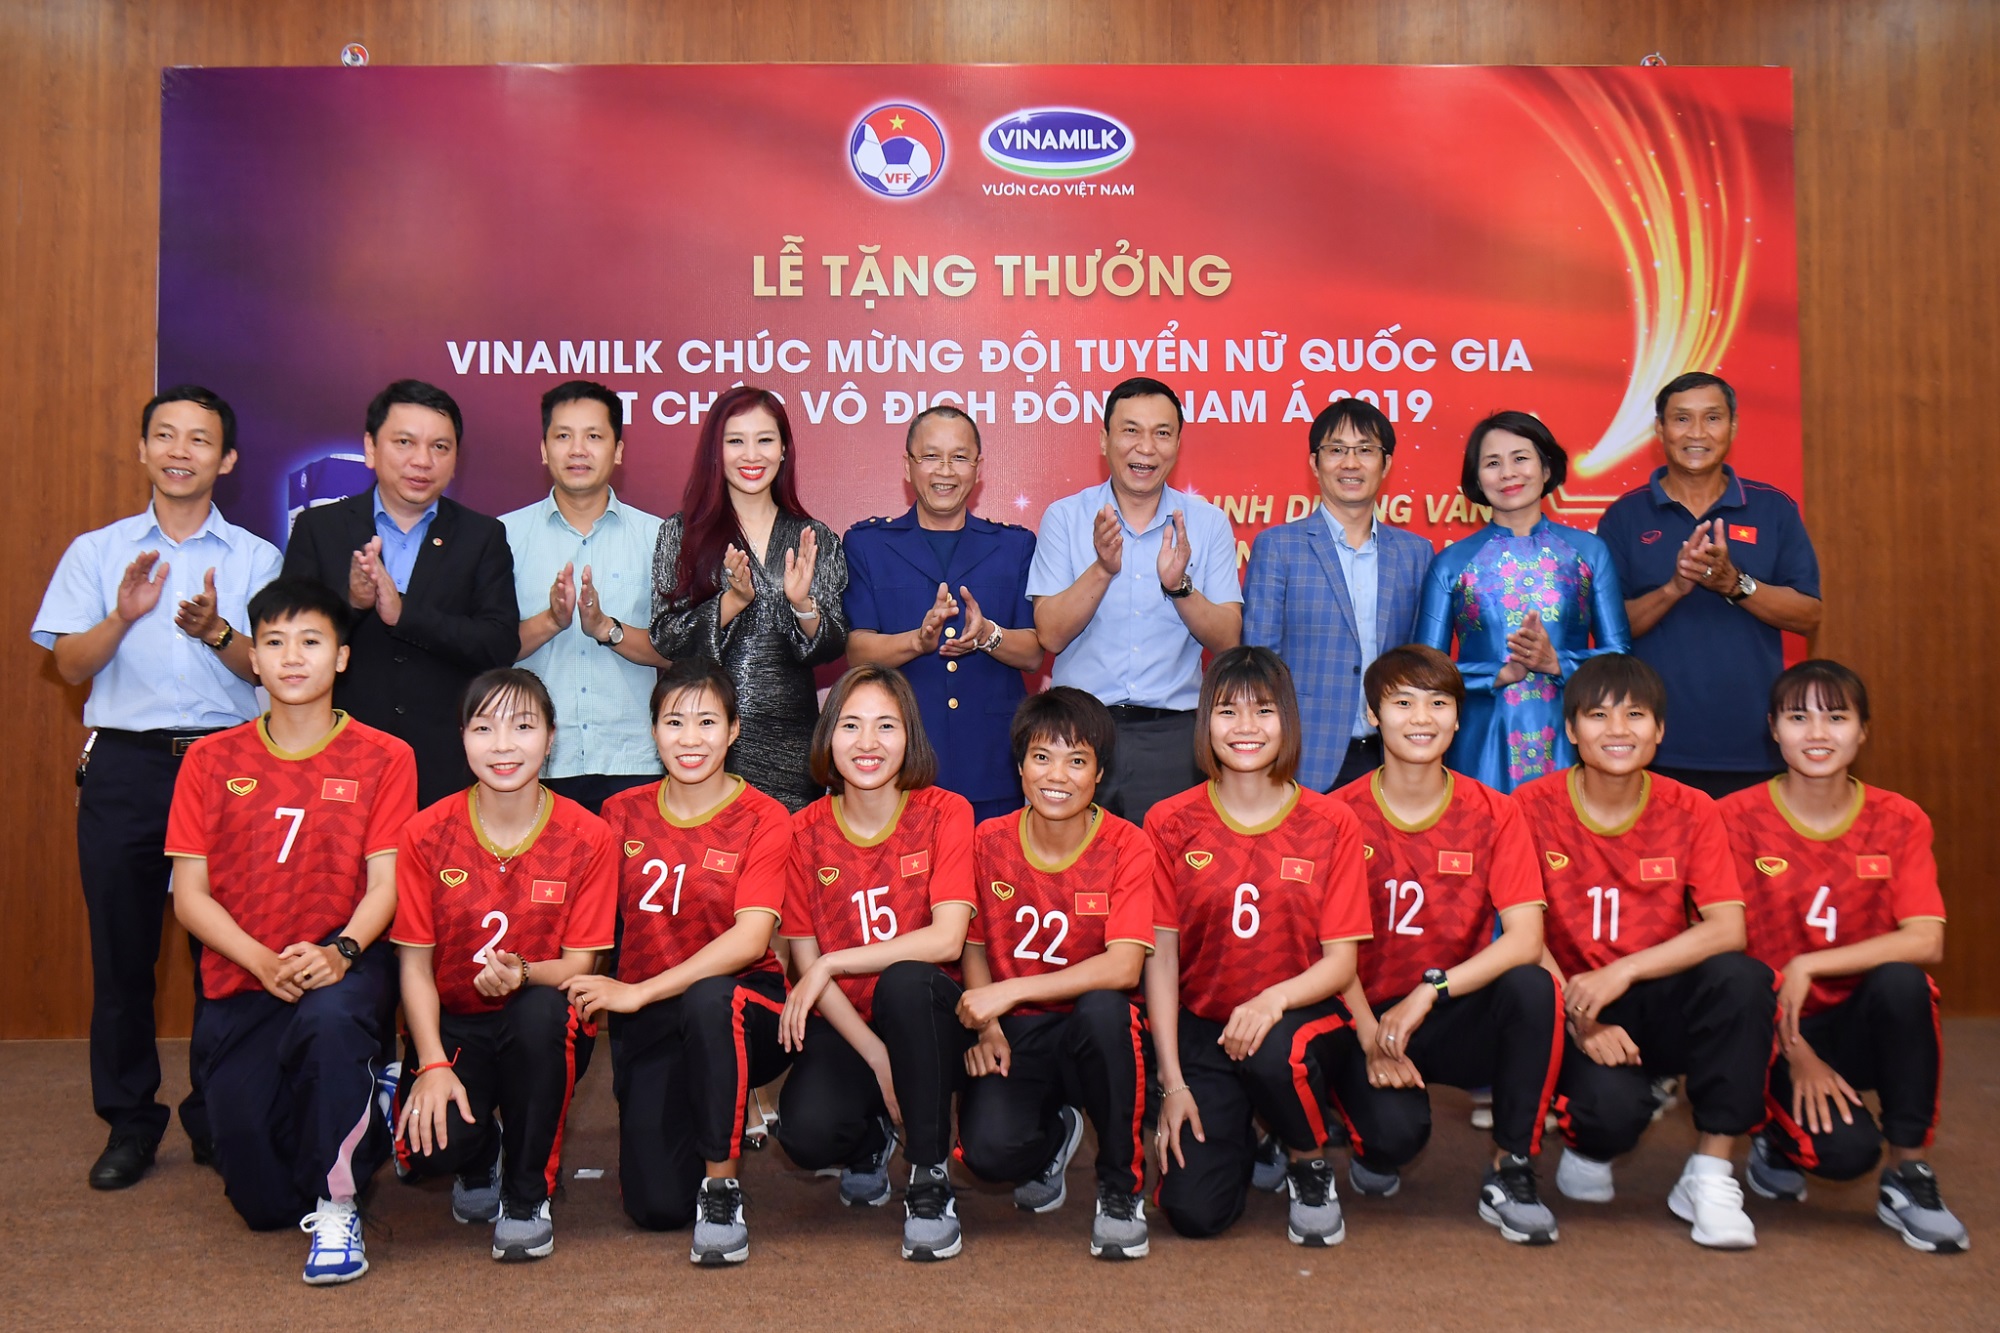 Vinamilk trao thưởng chúc mừng đội tuyển bóng đá nữ quốc gia vô địch Đông Nam Á 2019 - Ảnh 4